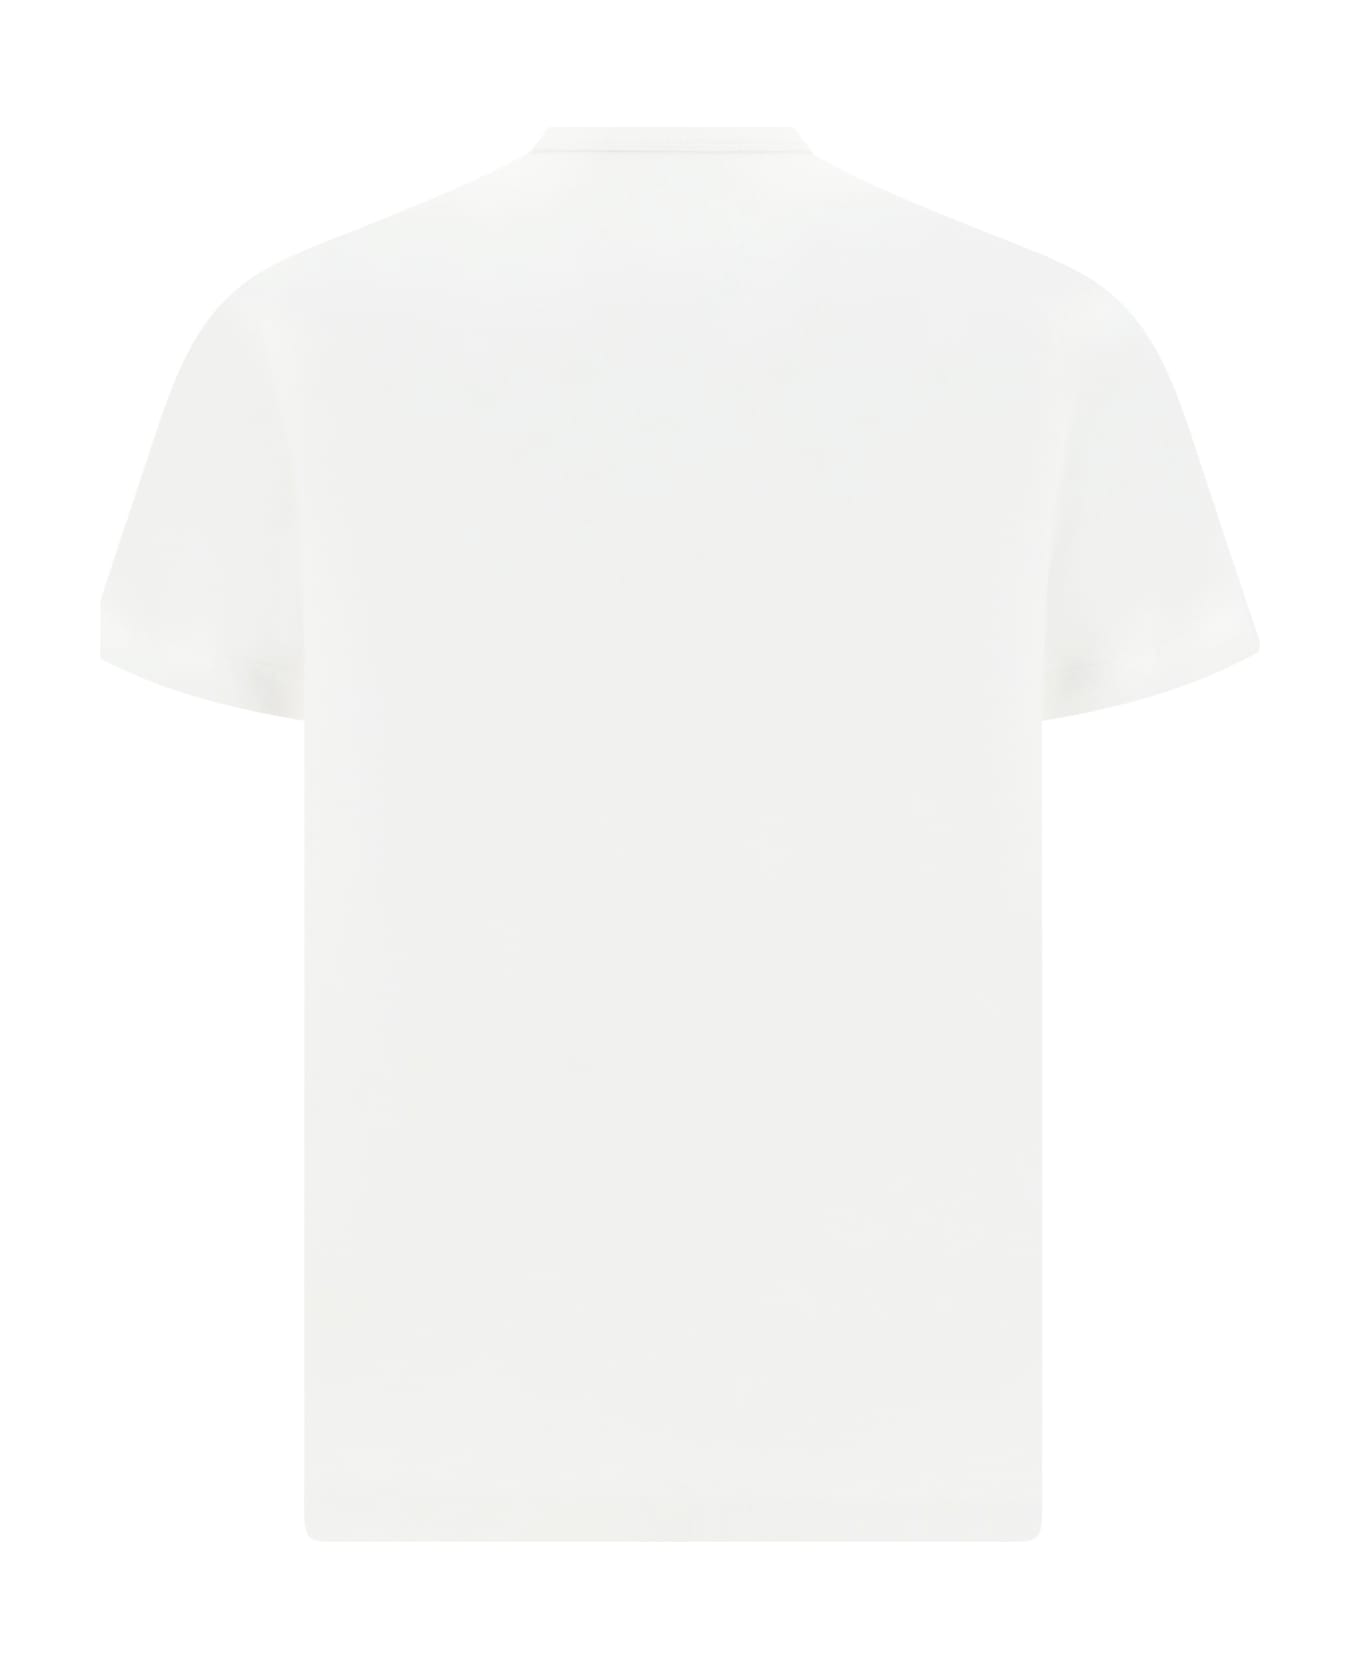 Diesel Just T-shirt - White